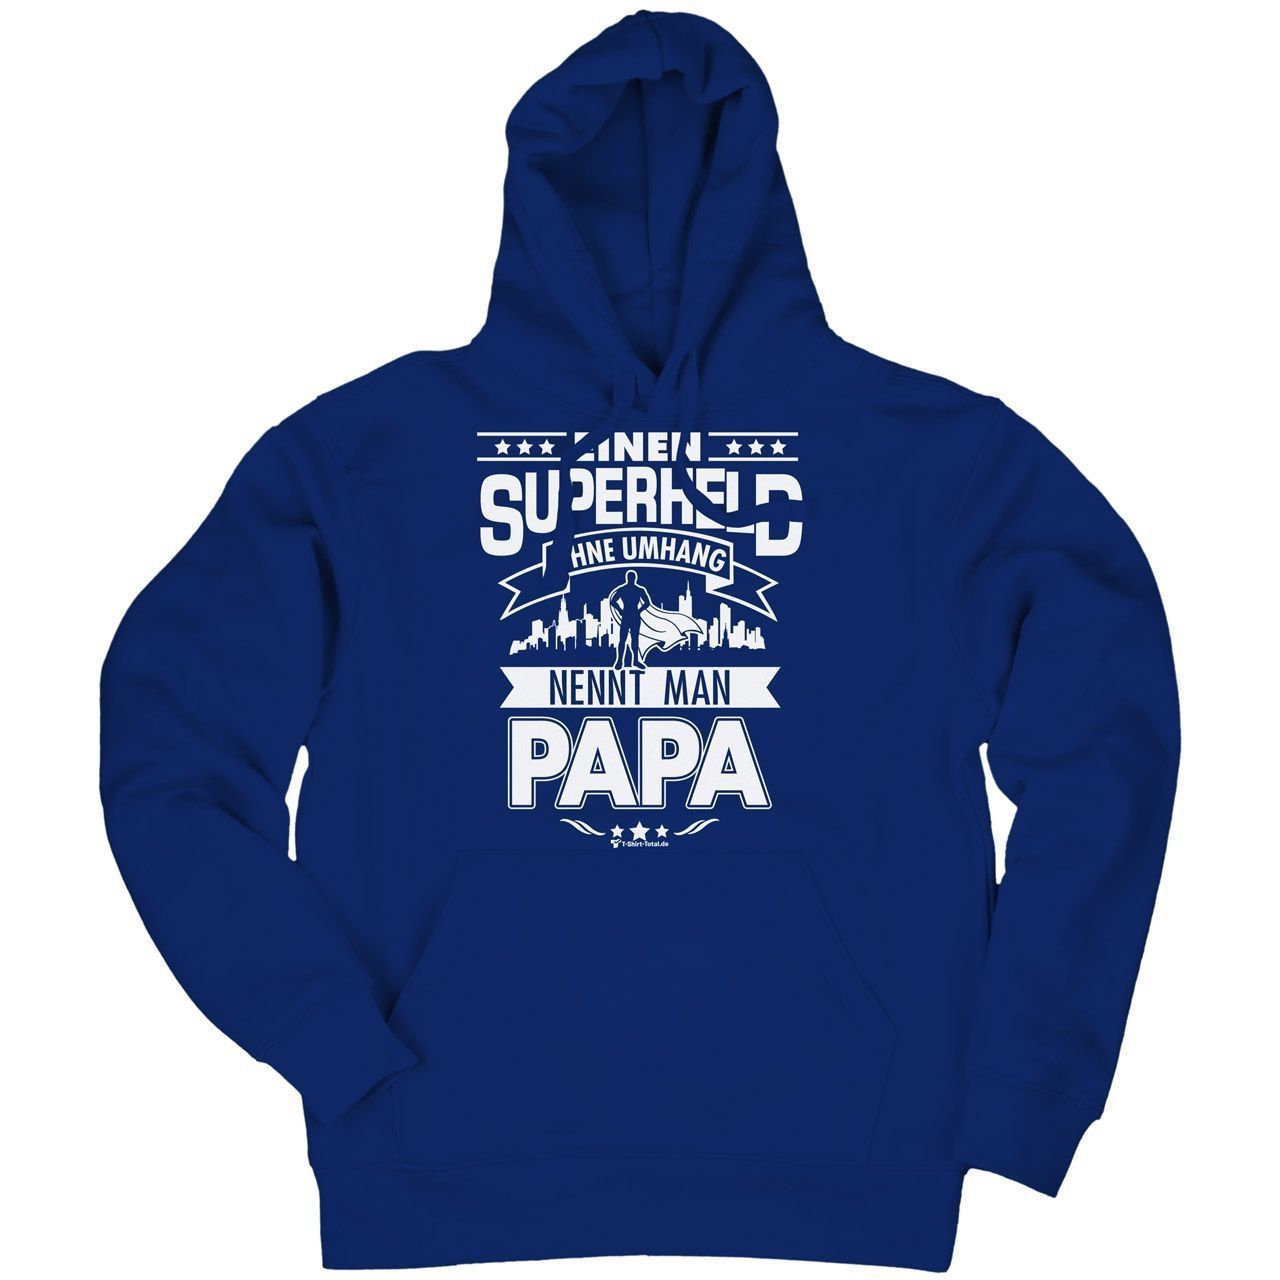 Superheld Papa Unisex Kapuzen Pulli royal Extra Small